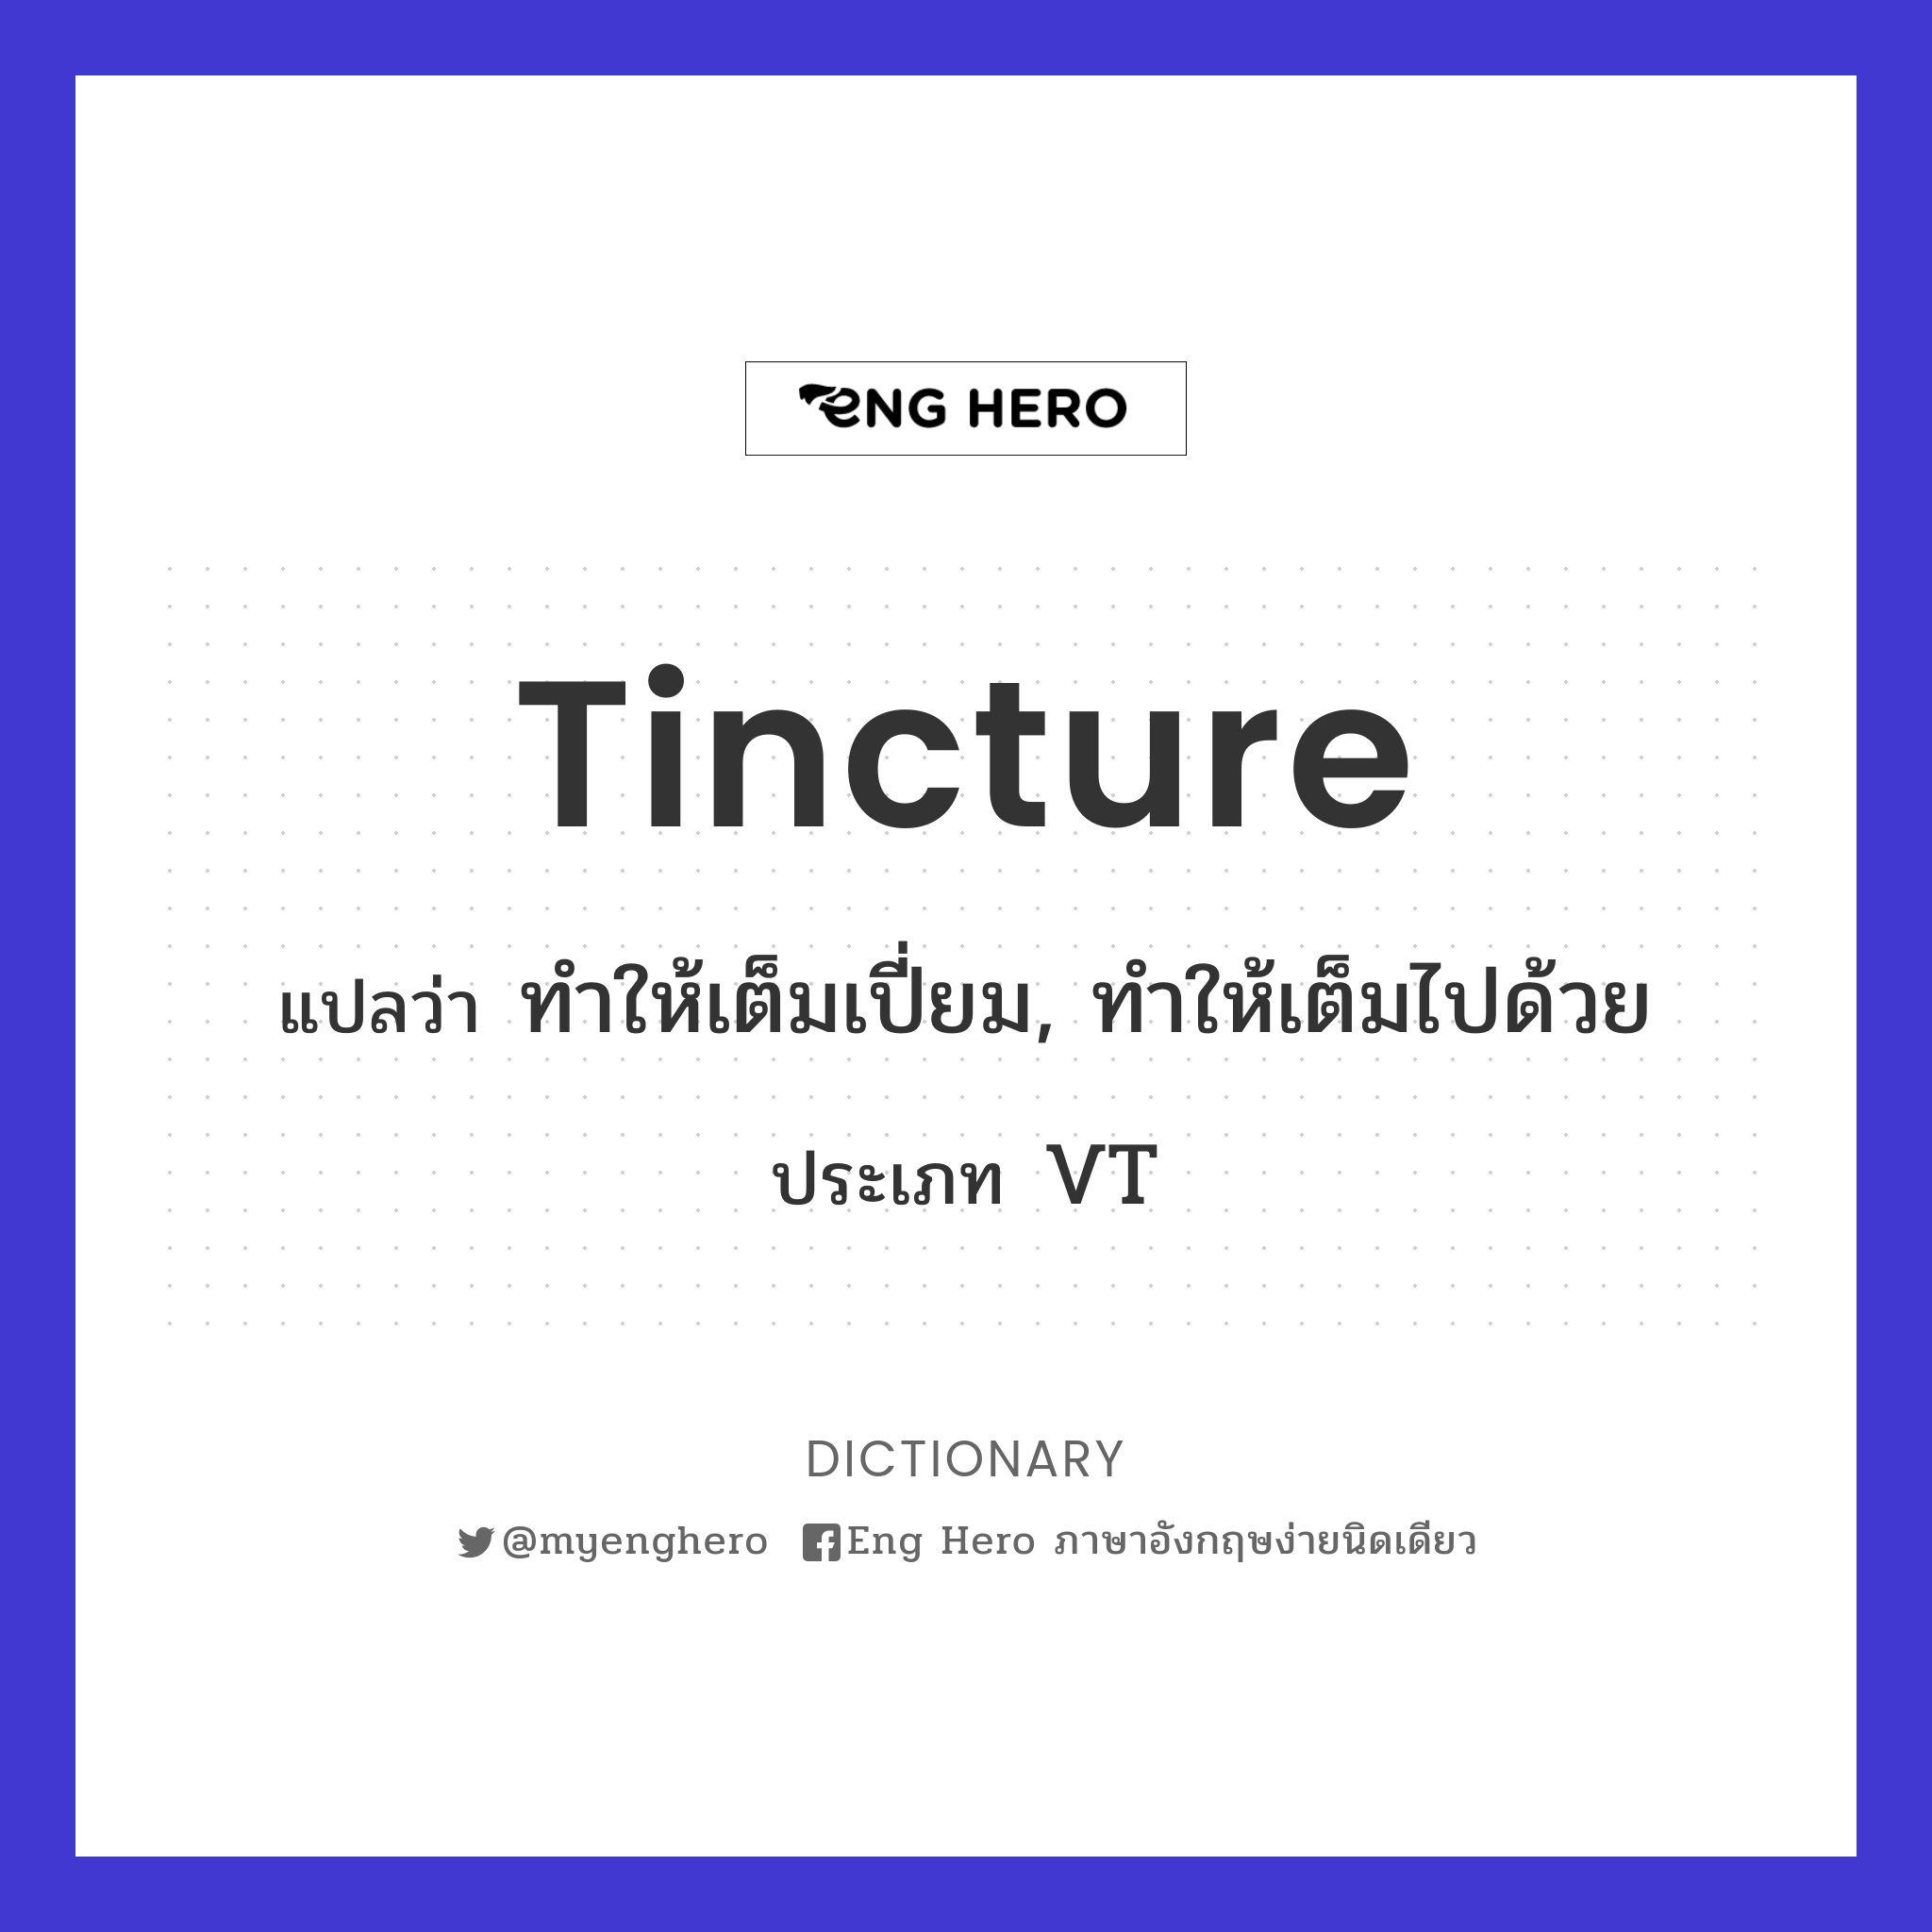 tincture